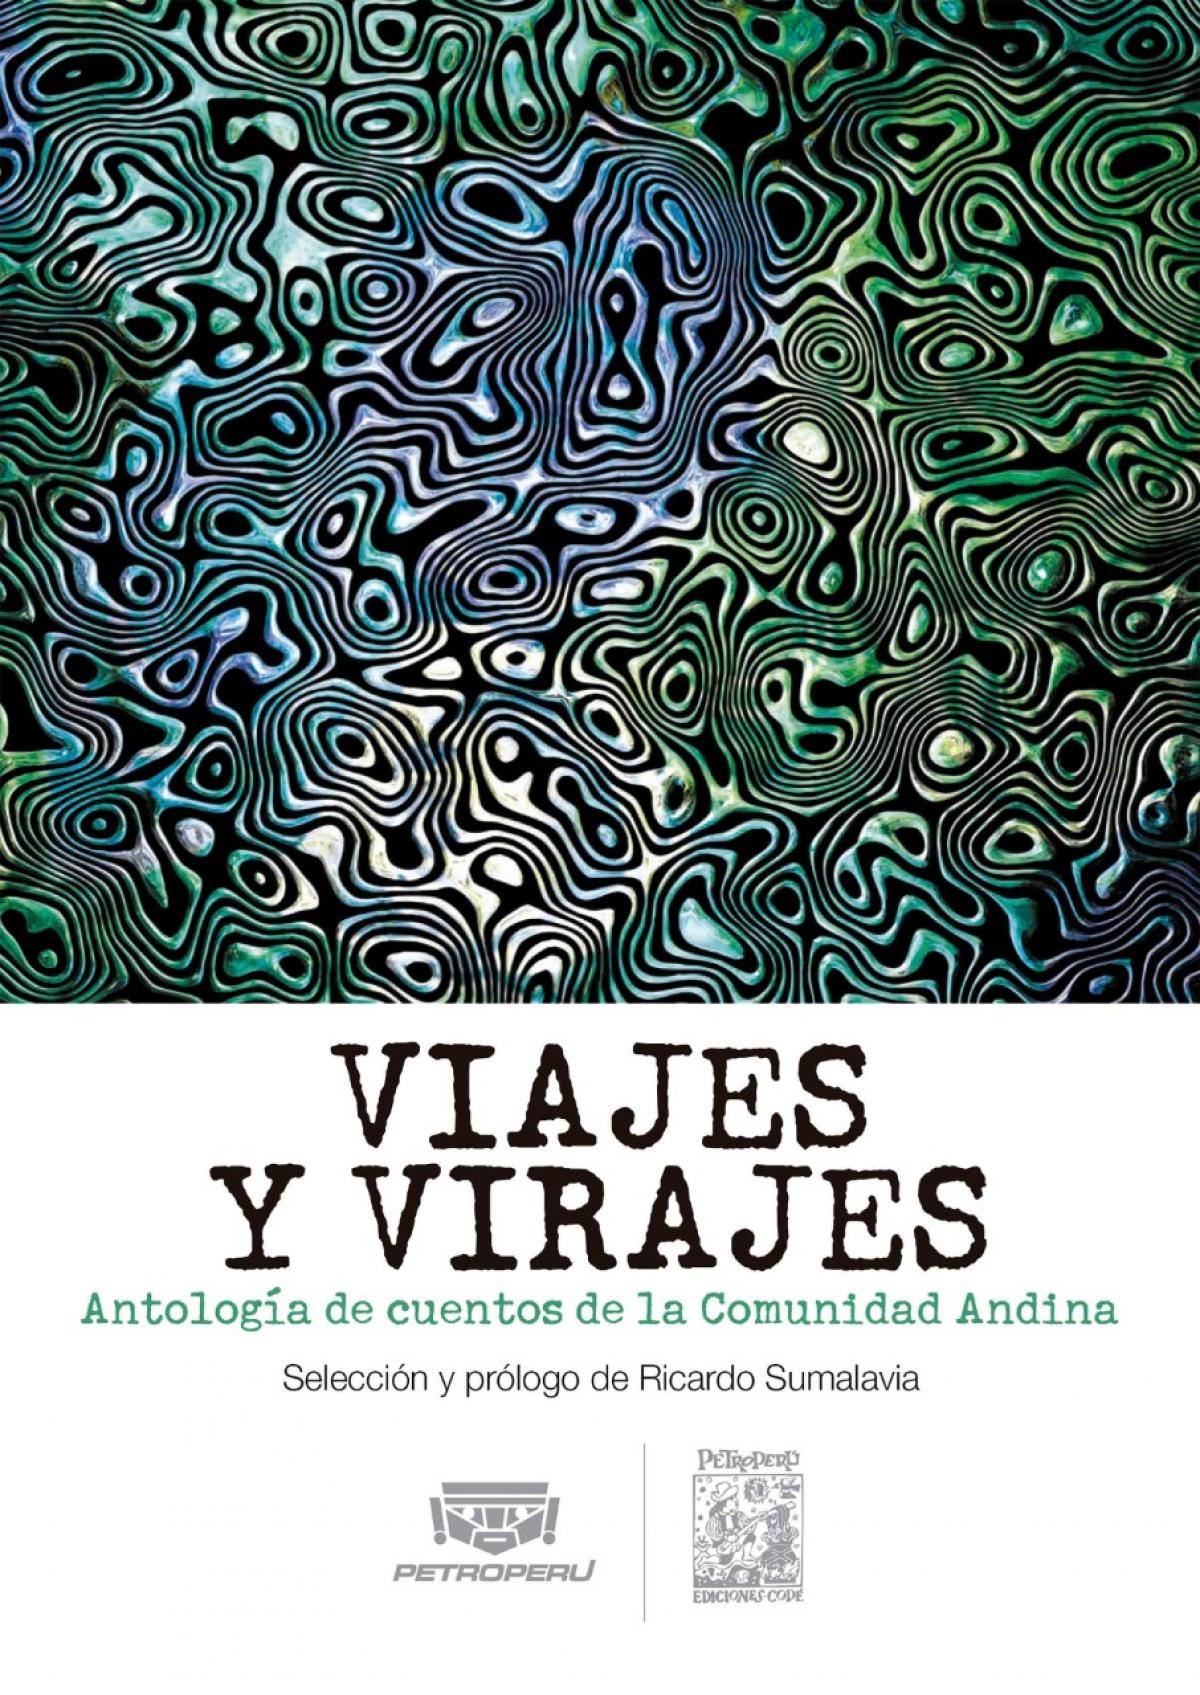 PETROPERÚ presentó “viajes y virajes” antología de cuentos de países andinos